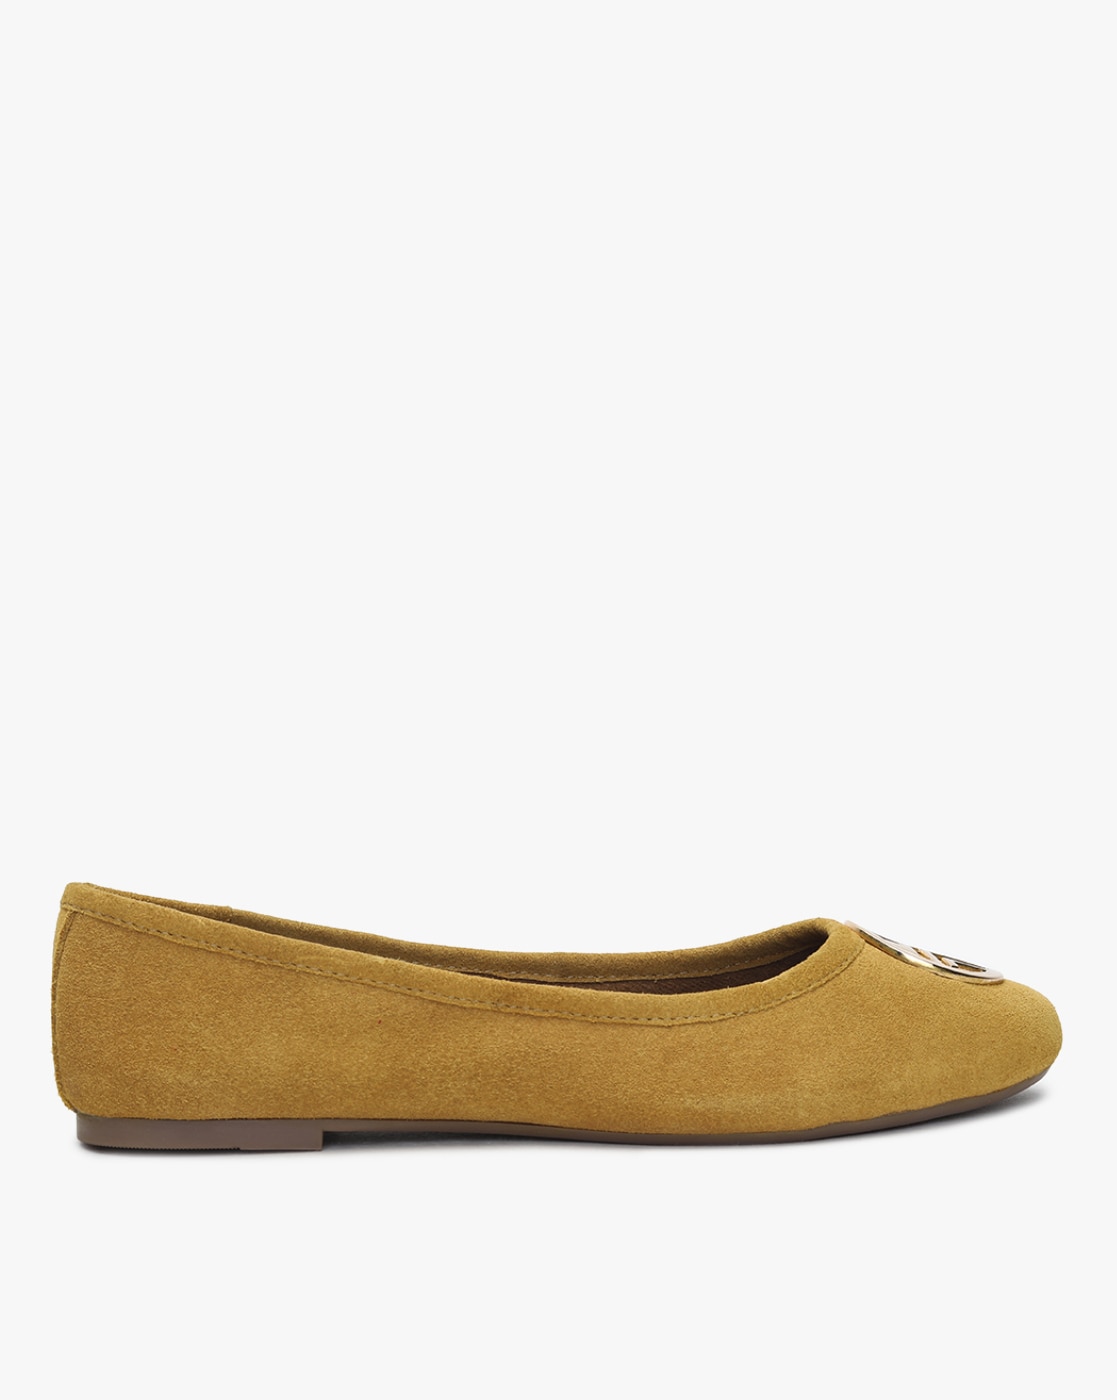 Buy Mustard Yellow Flat Shoes for Women 